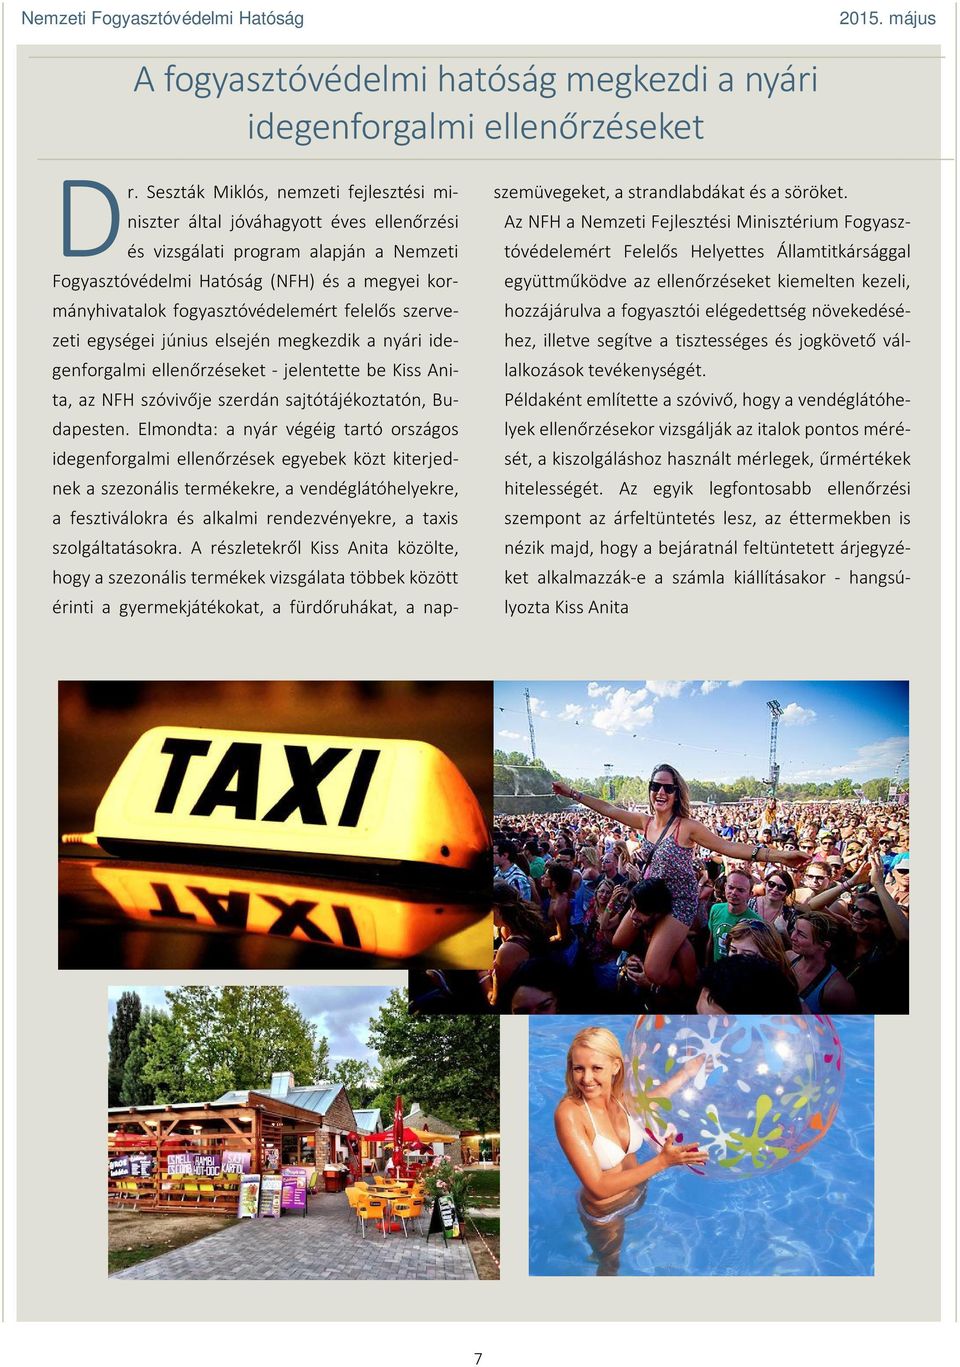 fogyasztóvédelemért felelős szervezeti egységei június elsején megkezdik a nyári idegenforgalmi ellenőrzéseket - jelentette be Kiss Anita, az NFH szóvivője szerdán sajtótájékoztatón, Budapesten.